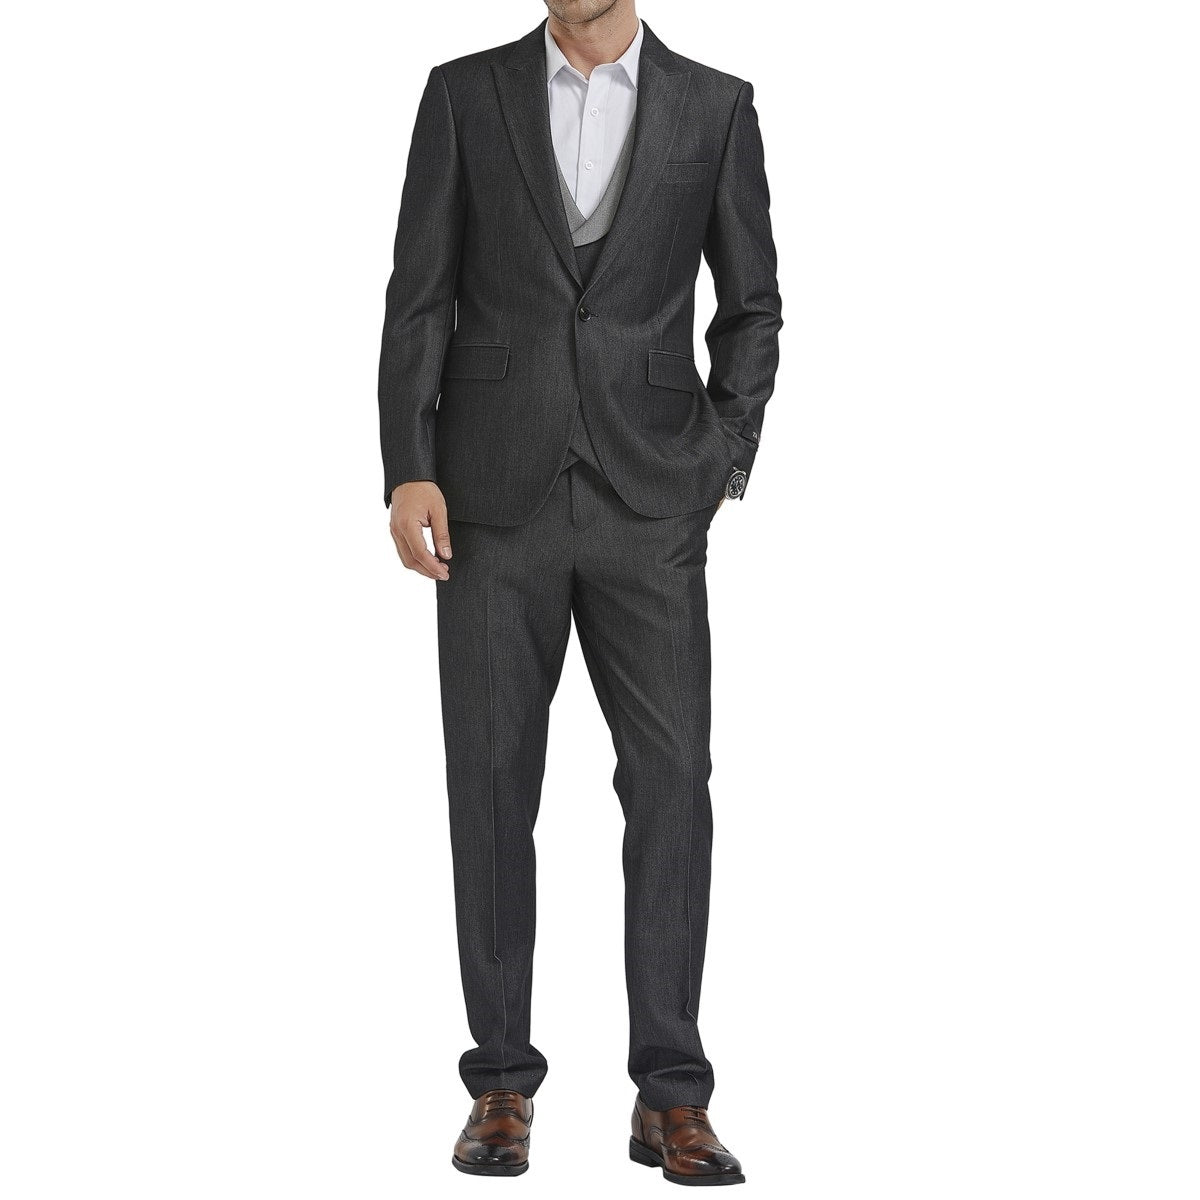 Traje Formal para Hombre TA-M347SK-01 - Formal Suit for Men